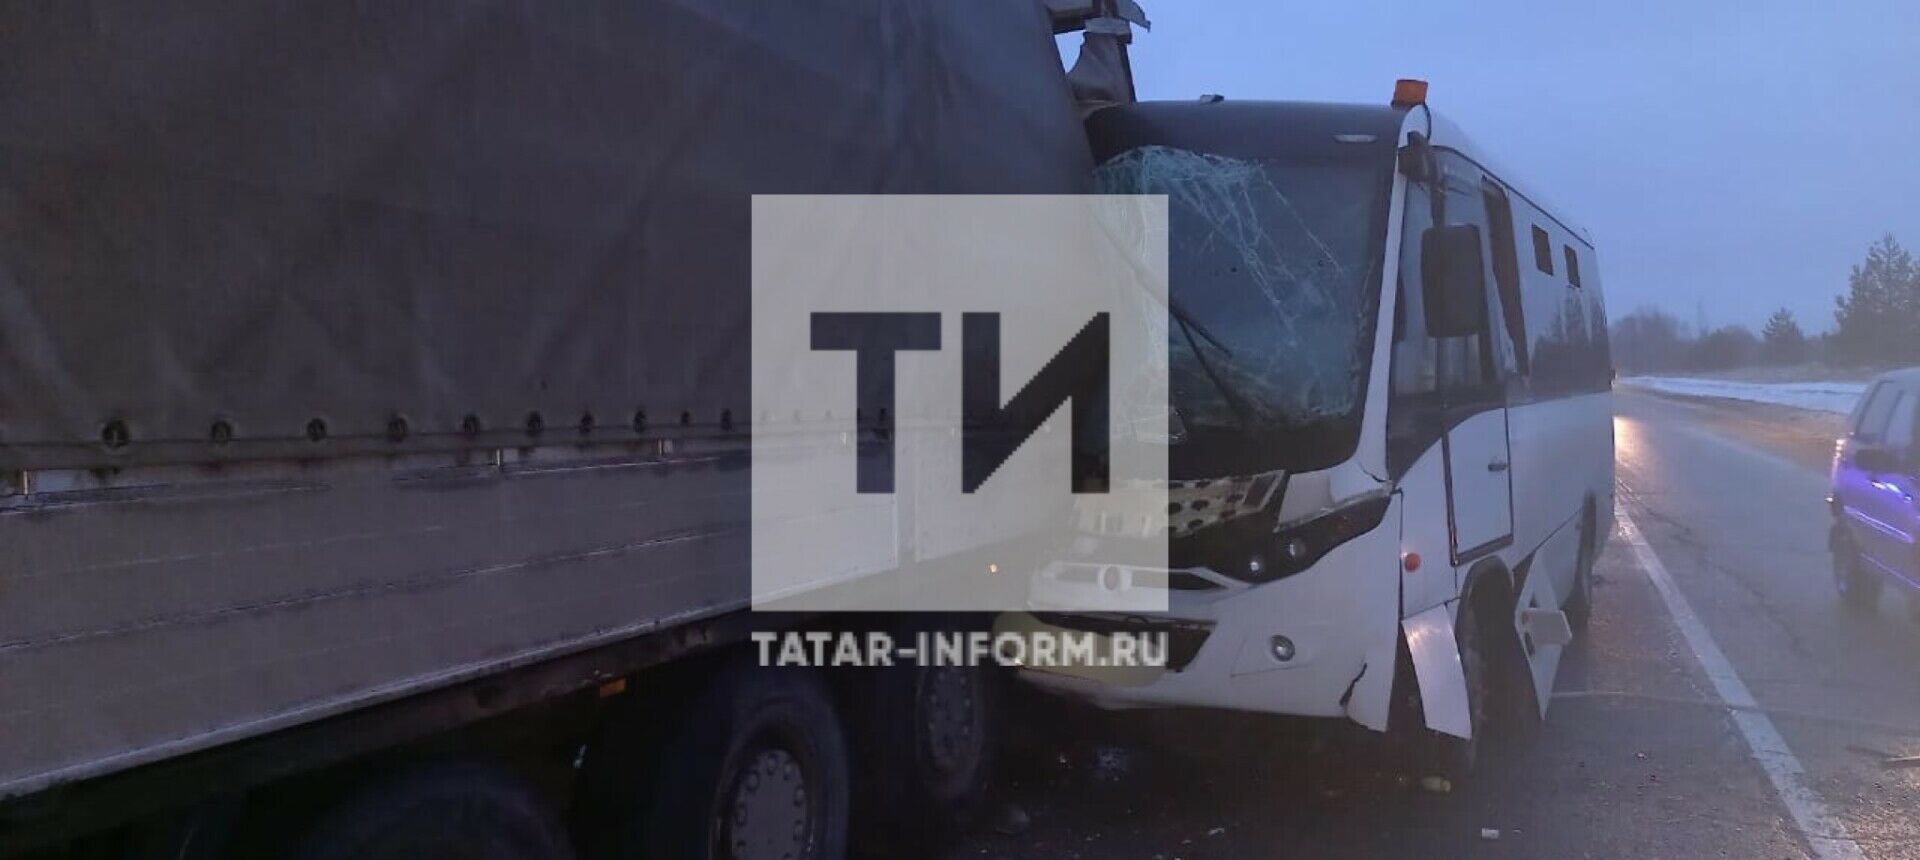 В Татарстане столкнулись грузовик и вахтовый автобус, есть погибший